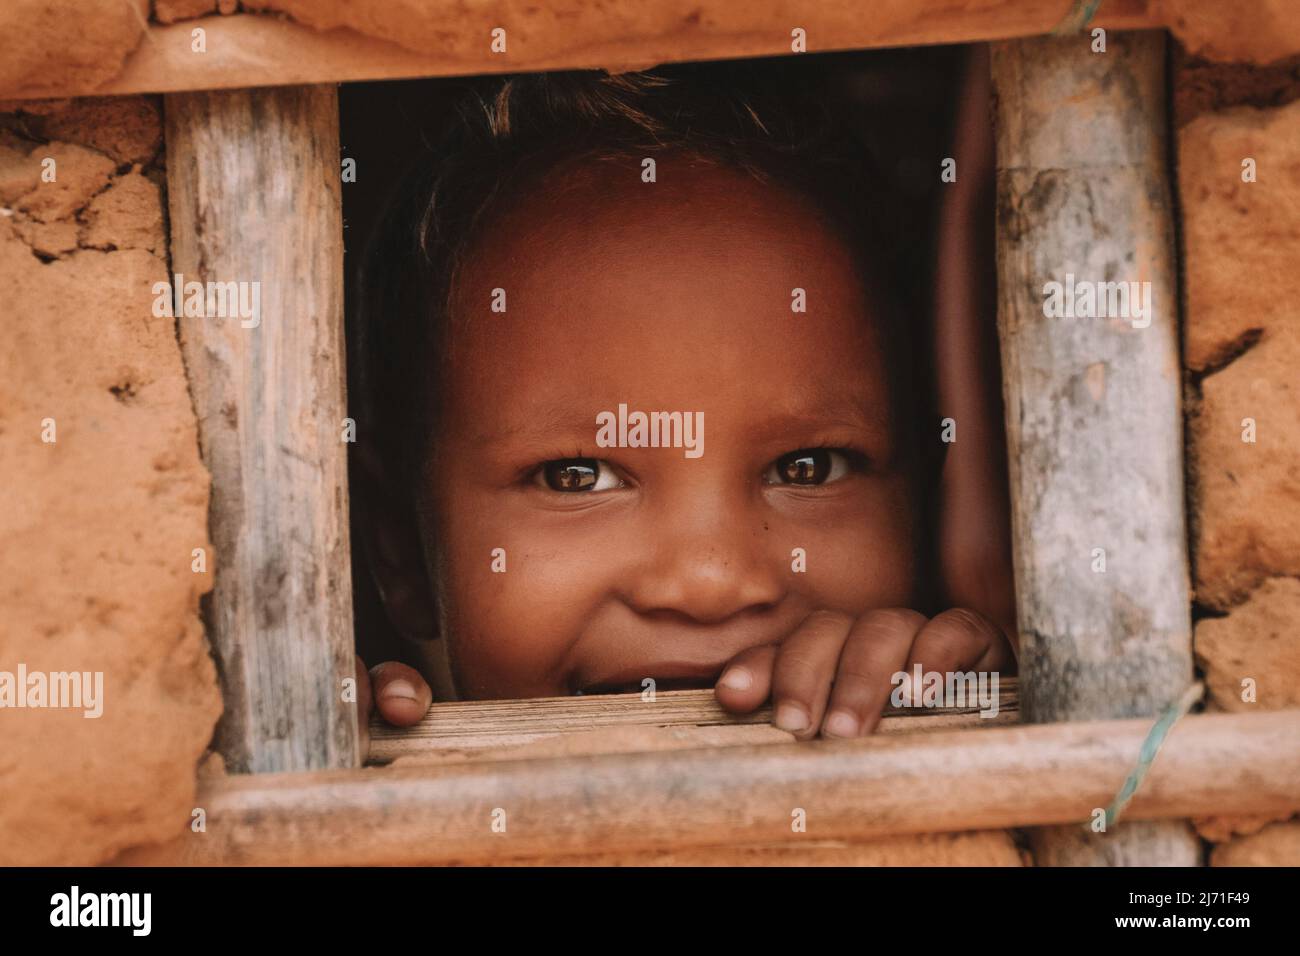 Un enfant atteint de pauvreté qui regarde et sourit à travers la petite fenêtre d'une maison de boue dans le nord du Brésil. Banque D'Images